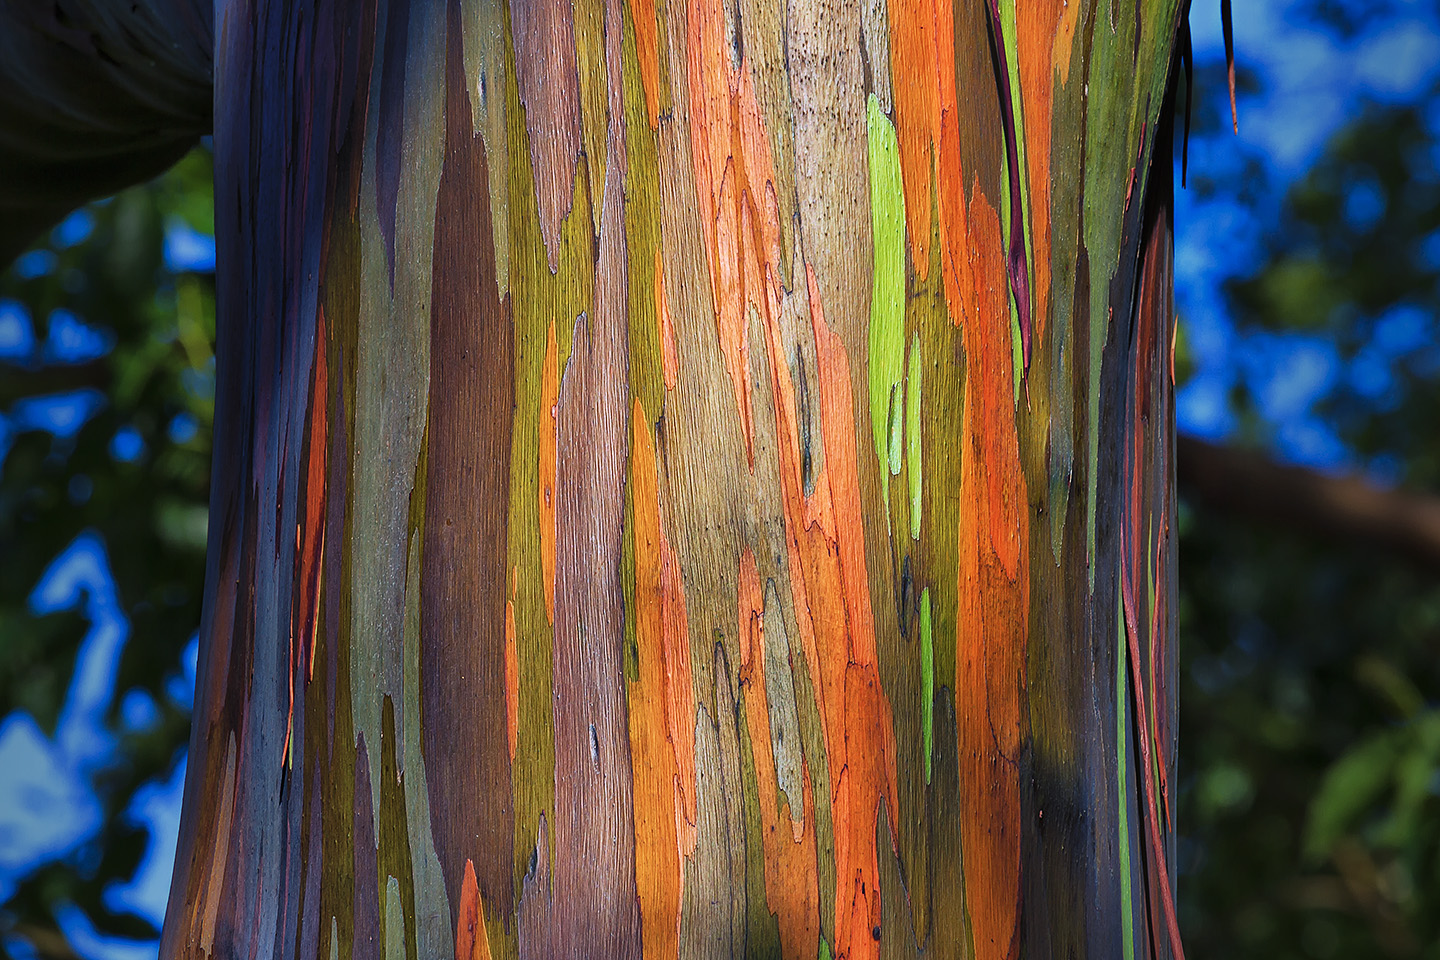 http://dotsonscreen.com/dotsonscreen/wp-content/uploads/2014/09/Rainbow-Eucalyptus.jpg